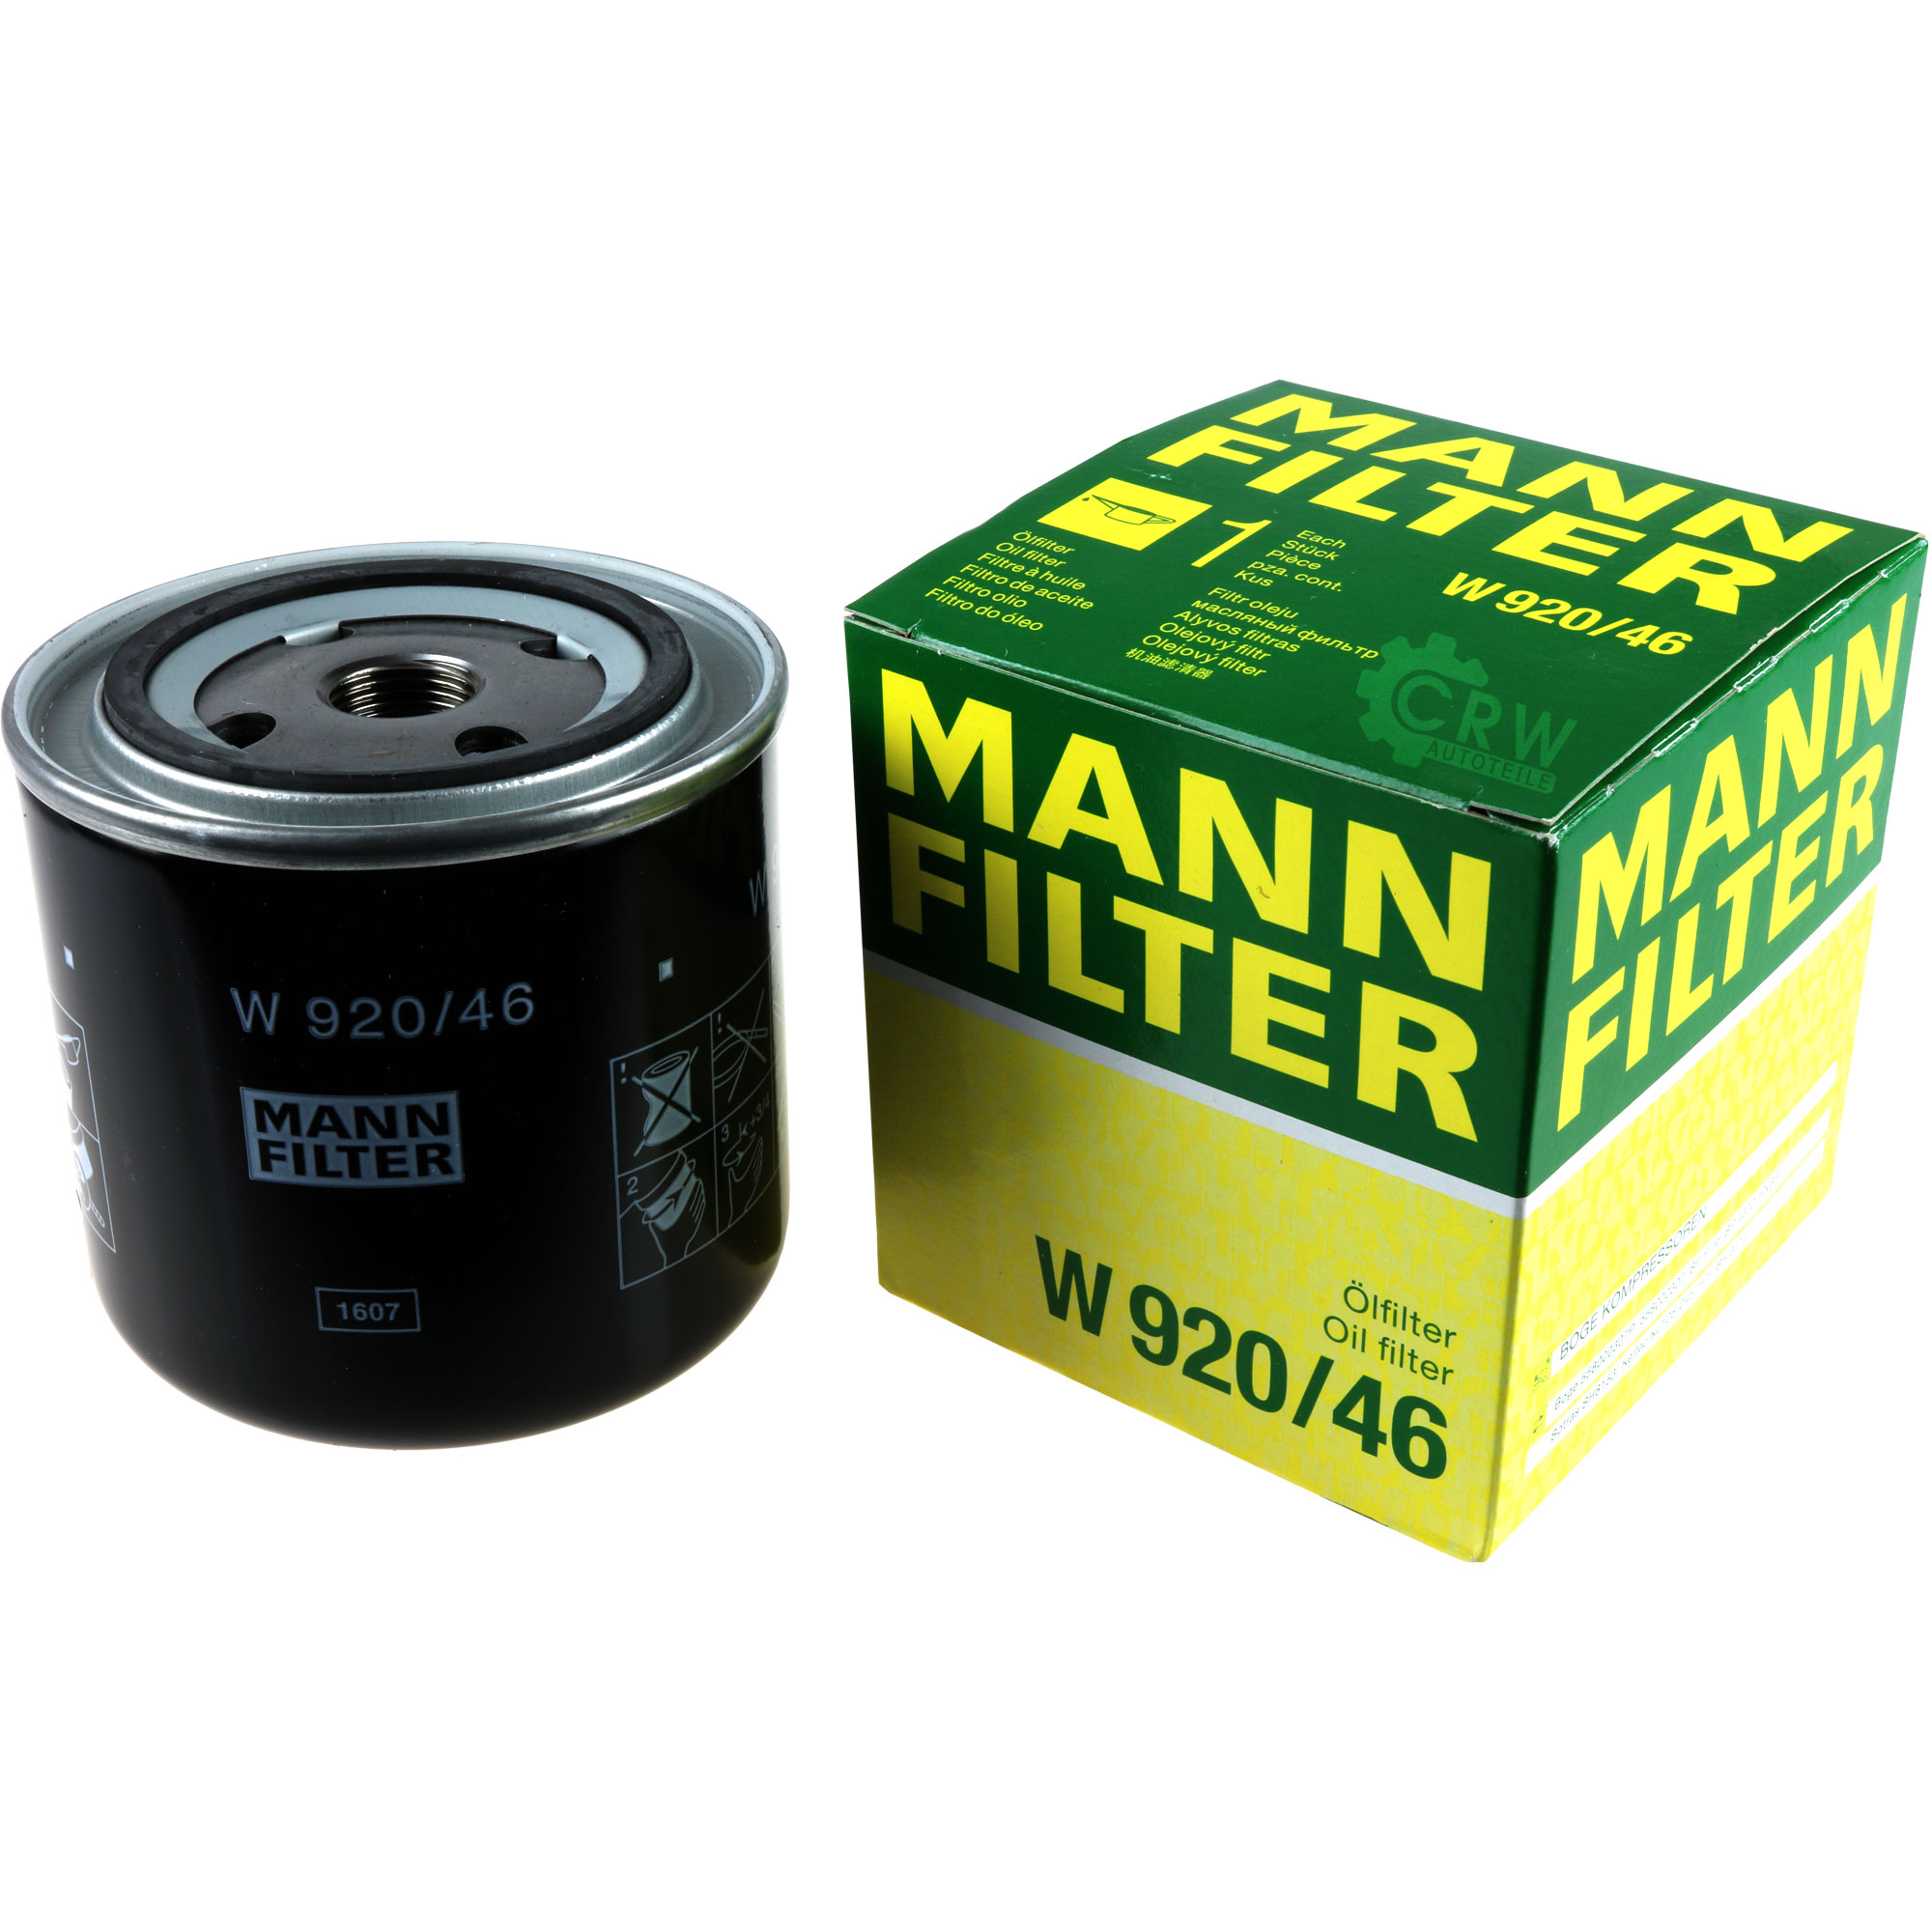 MANN-FILTER Schmieroelwechselfilter W 920/46 Ölfilter Oil Filter